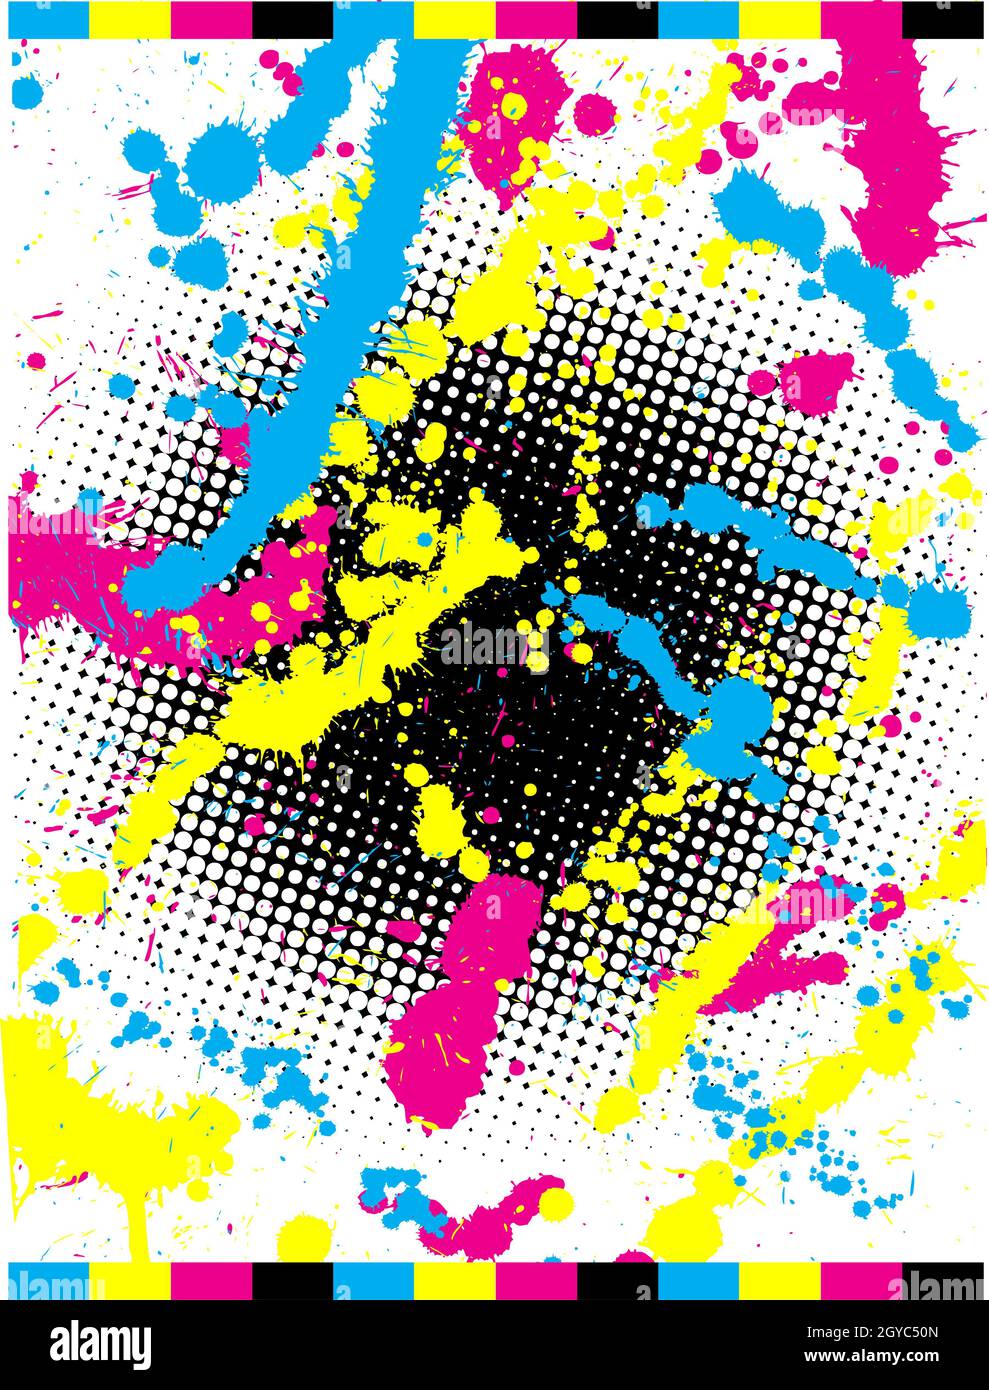 Abstract grunge fond dans des couleurs CMJN Banque D'Images